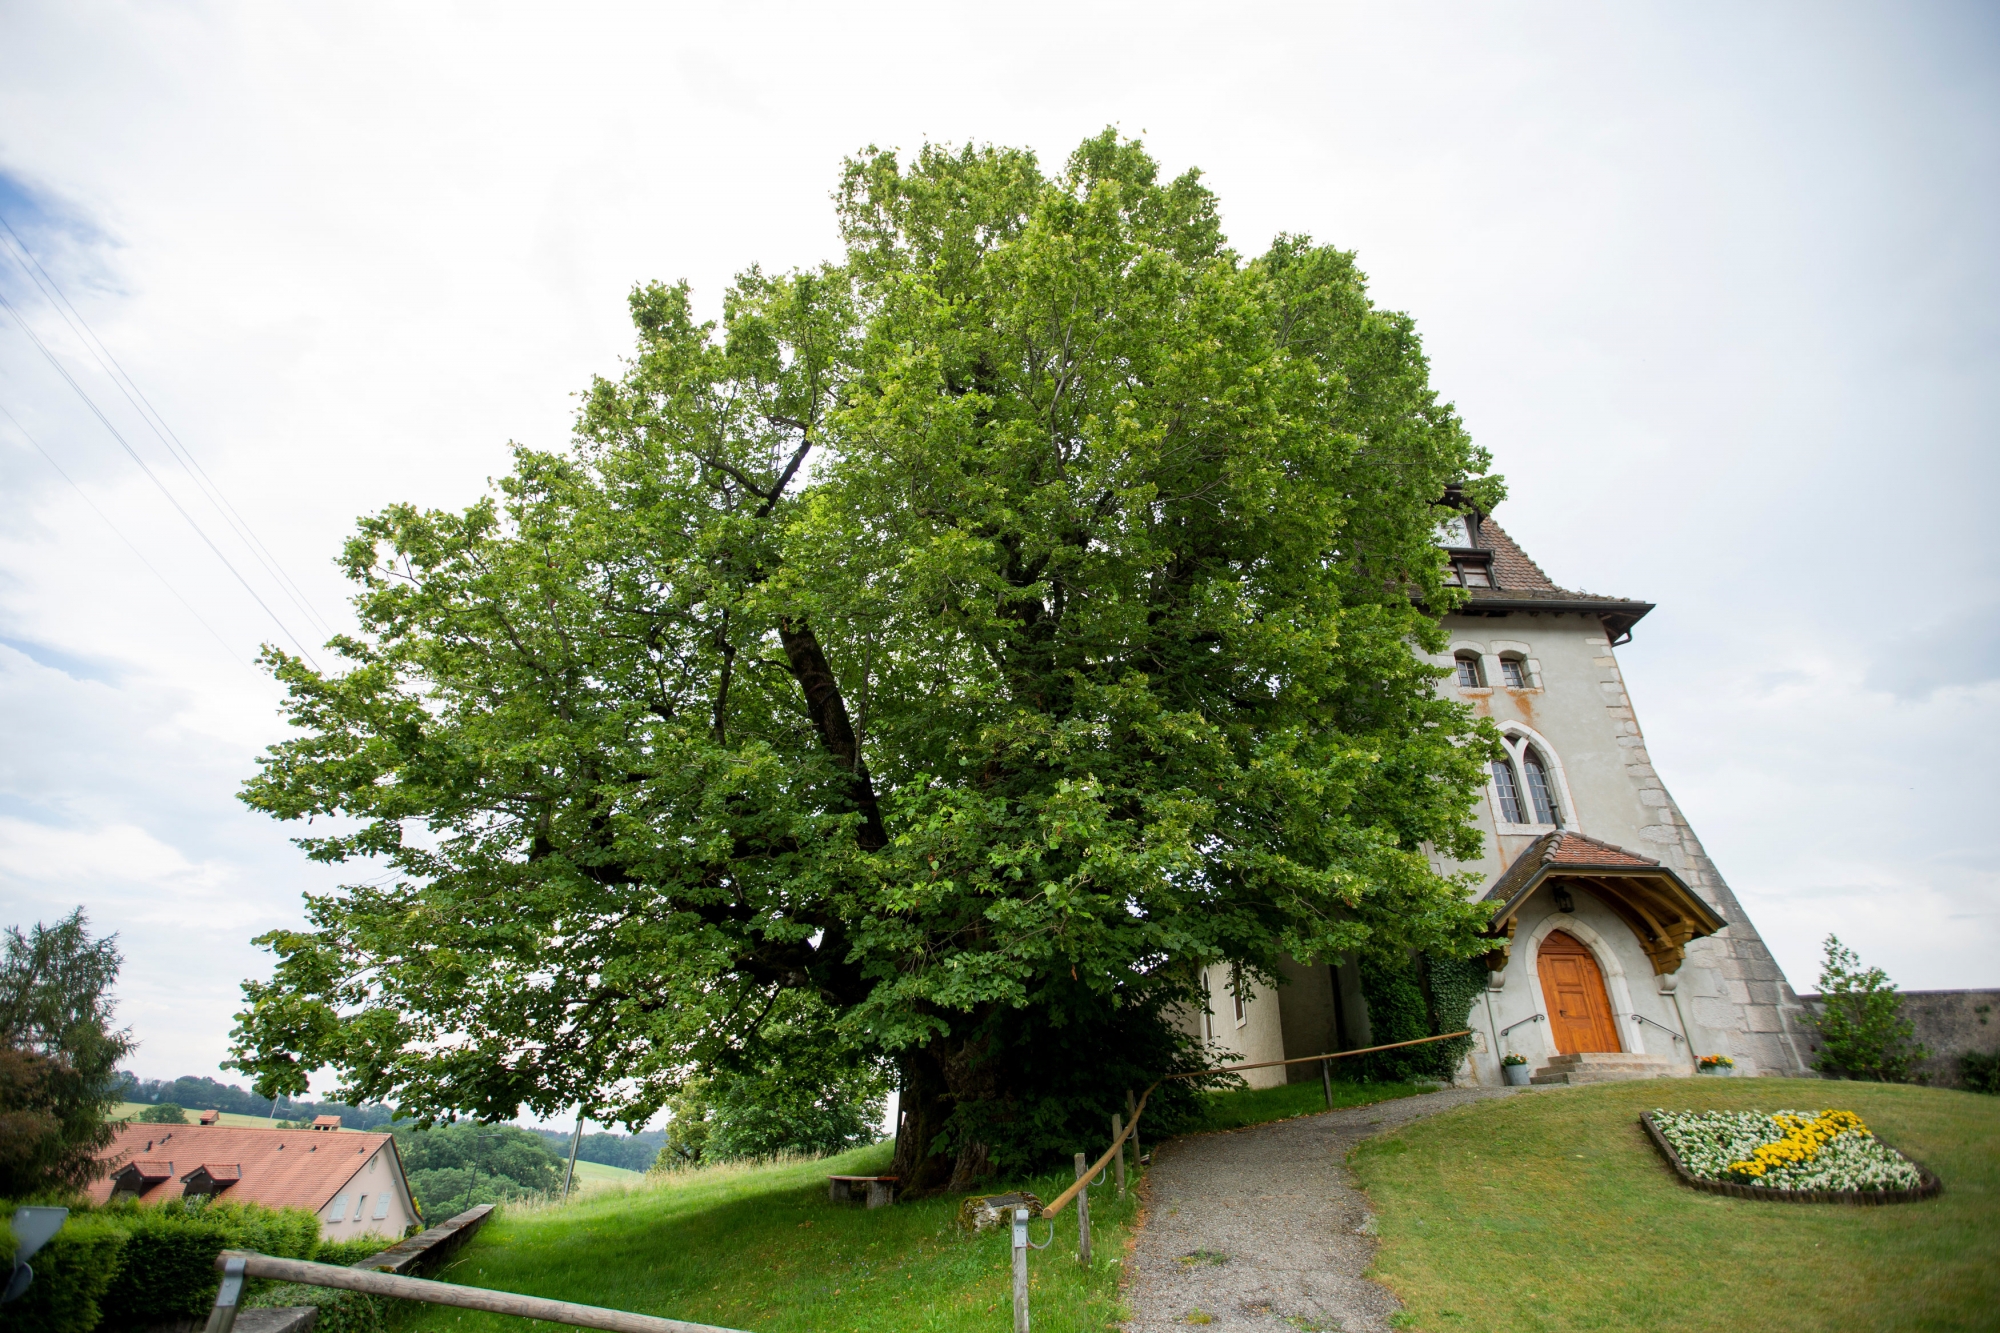 Emblème de la commune, le tilleul à grandes feuilles de Marchissy est le deuxième plus gros et plus vieux de Suisse après celui de Linn, en Argovie.